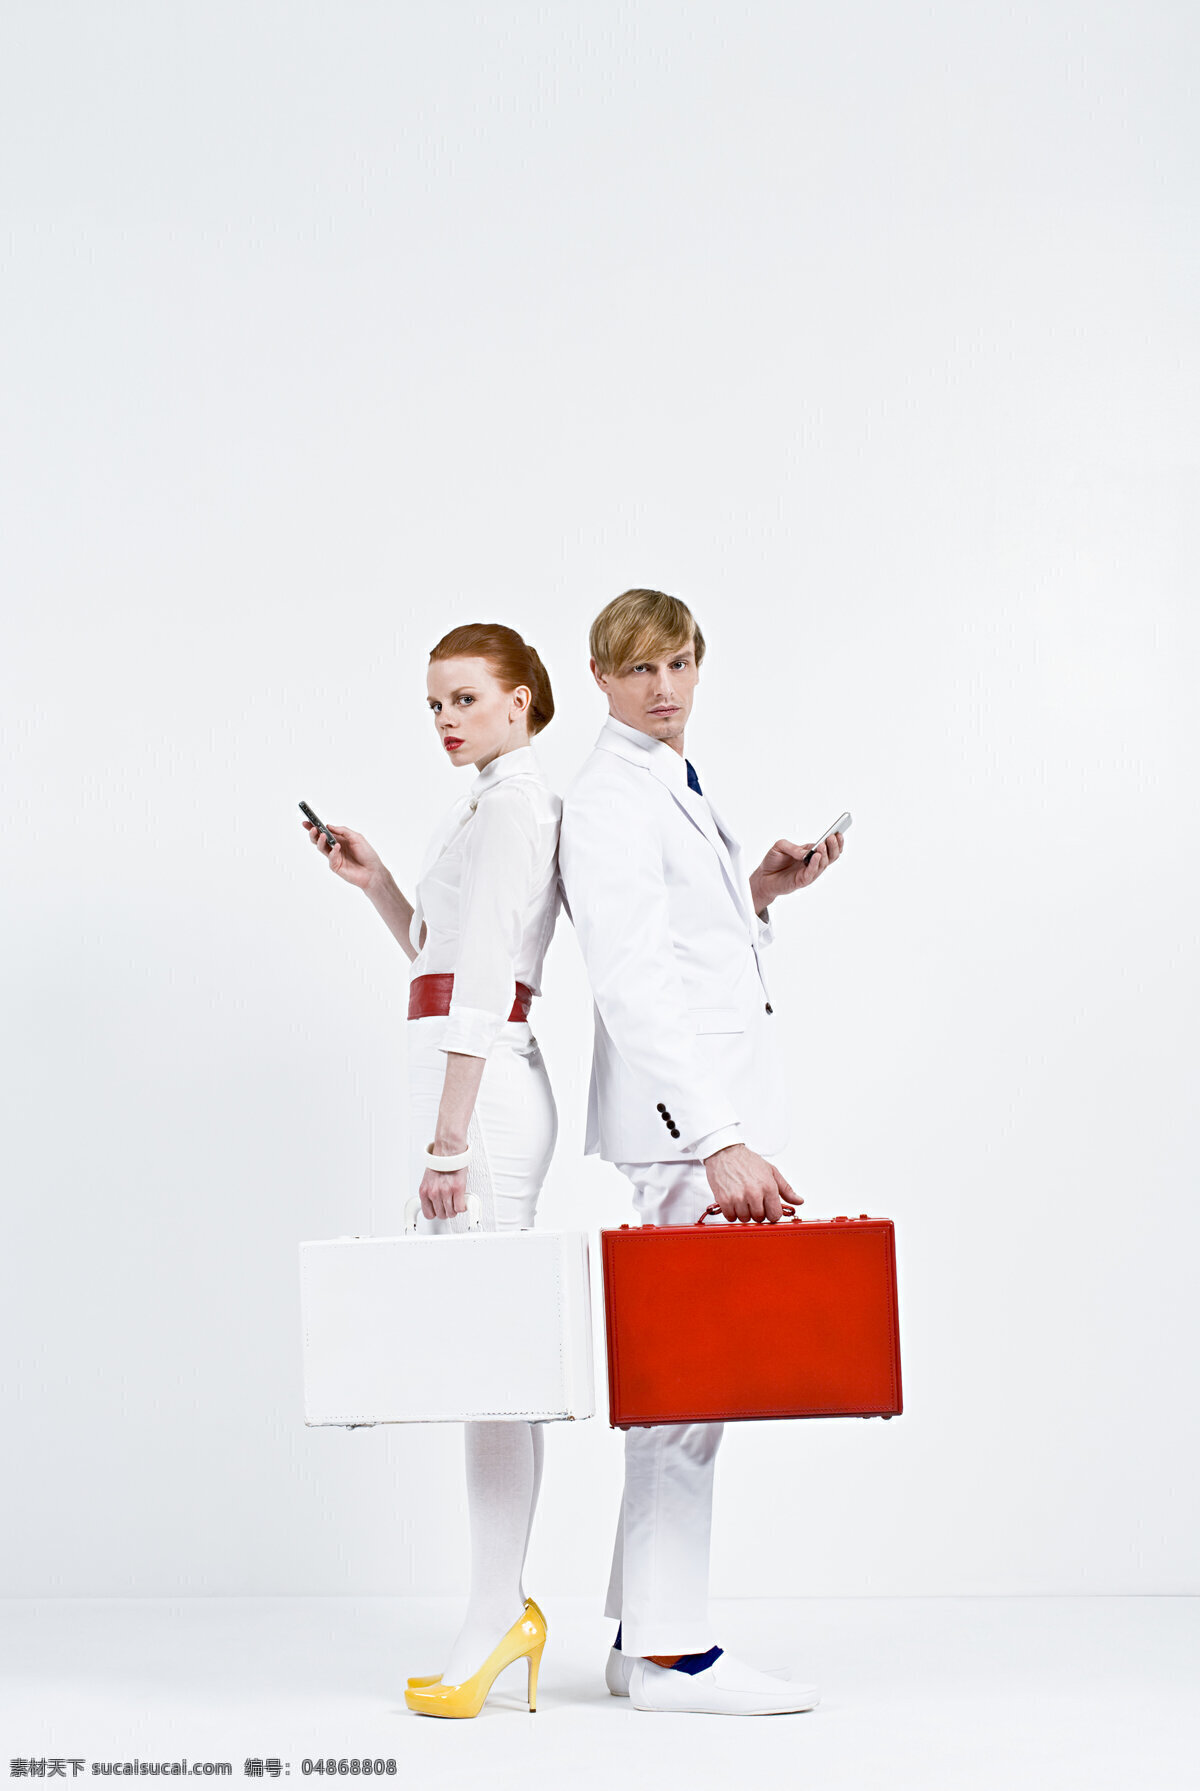 提 着手 提箱 男女 人物 时尚人物 时尚女性 白色正装 时尚男性 提着 箱子 手提箱 手机 背靠背 生活人物 人物图片